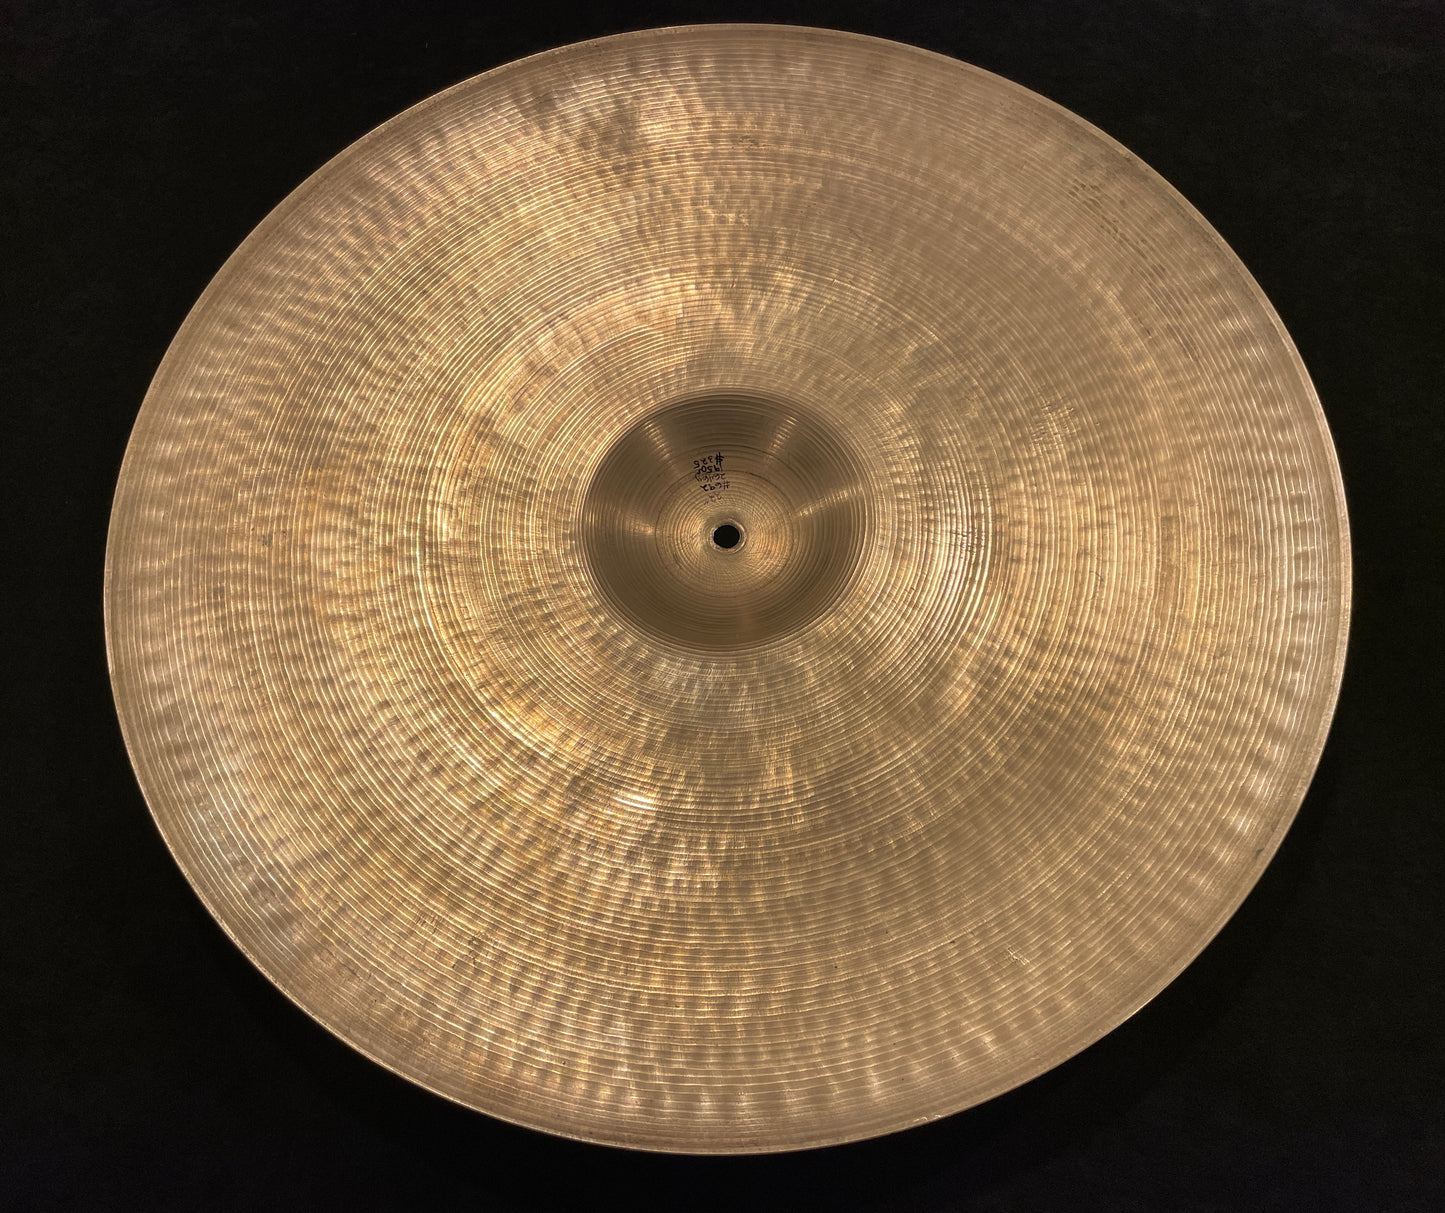 22" Zildjian A 1950s Ride Cymbal 2646g #692 *Video Demo*